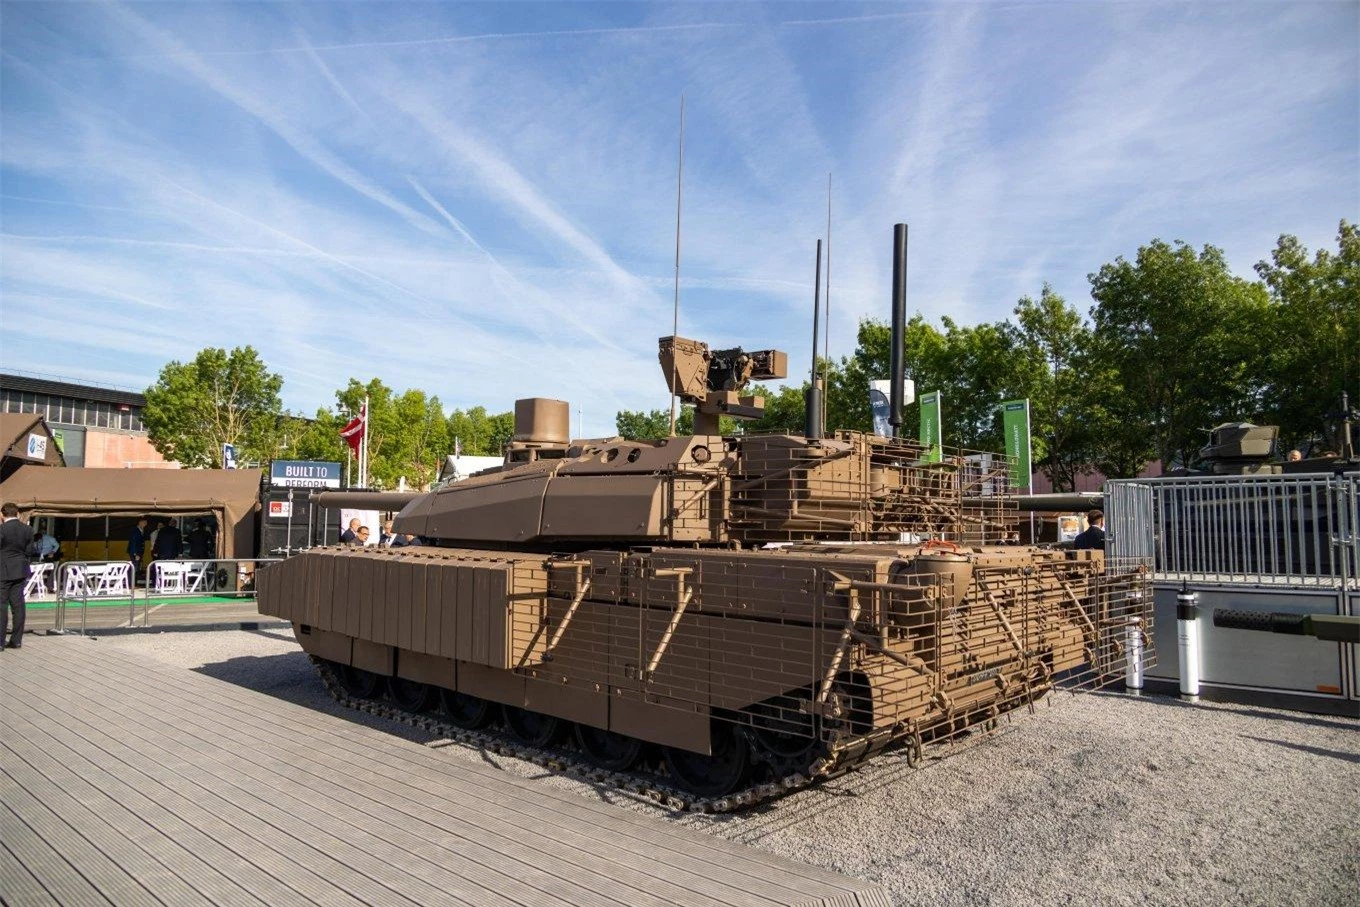 Kế hoạch chung của Paris để tiến hành hiện đại hóa 122 chiếc Leclerc được tính toán cho đến năm 2025, 18 xe tăng đầu tiên cần được tăng cường cho lực lượng vũ trang Pháp vào năm 2023 hiện tại.